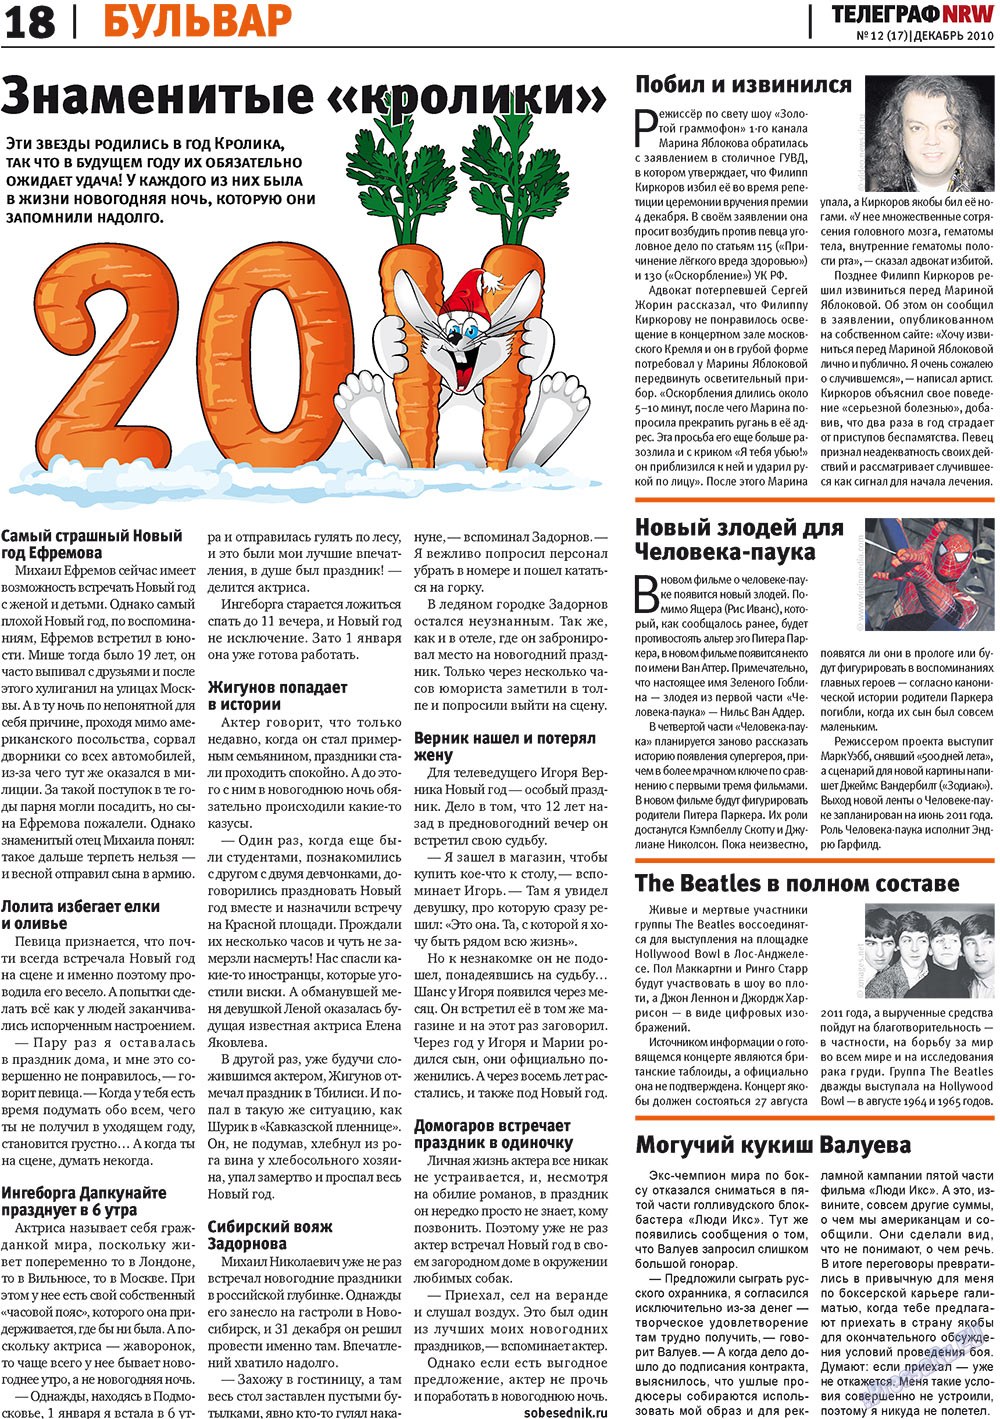 Телеграф NRW (газета). 2010 год, номер 12, стр. 18